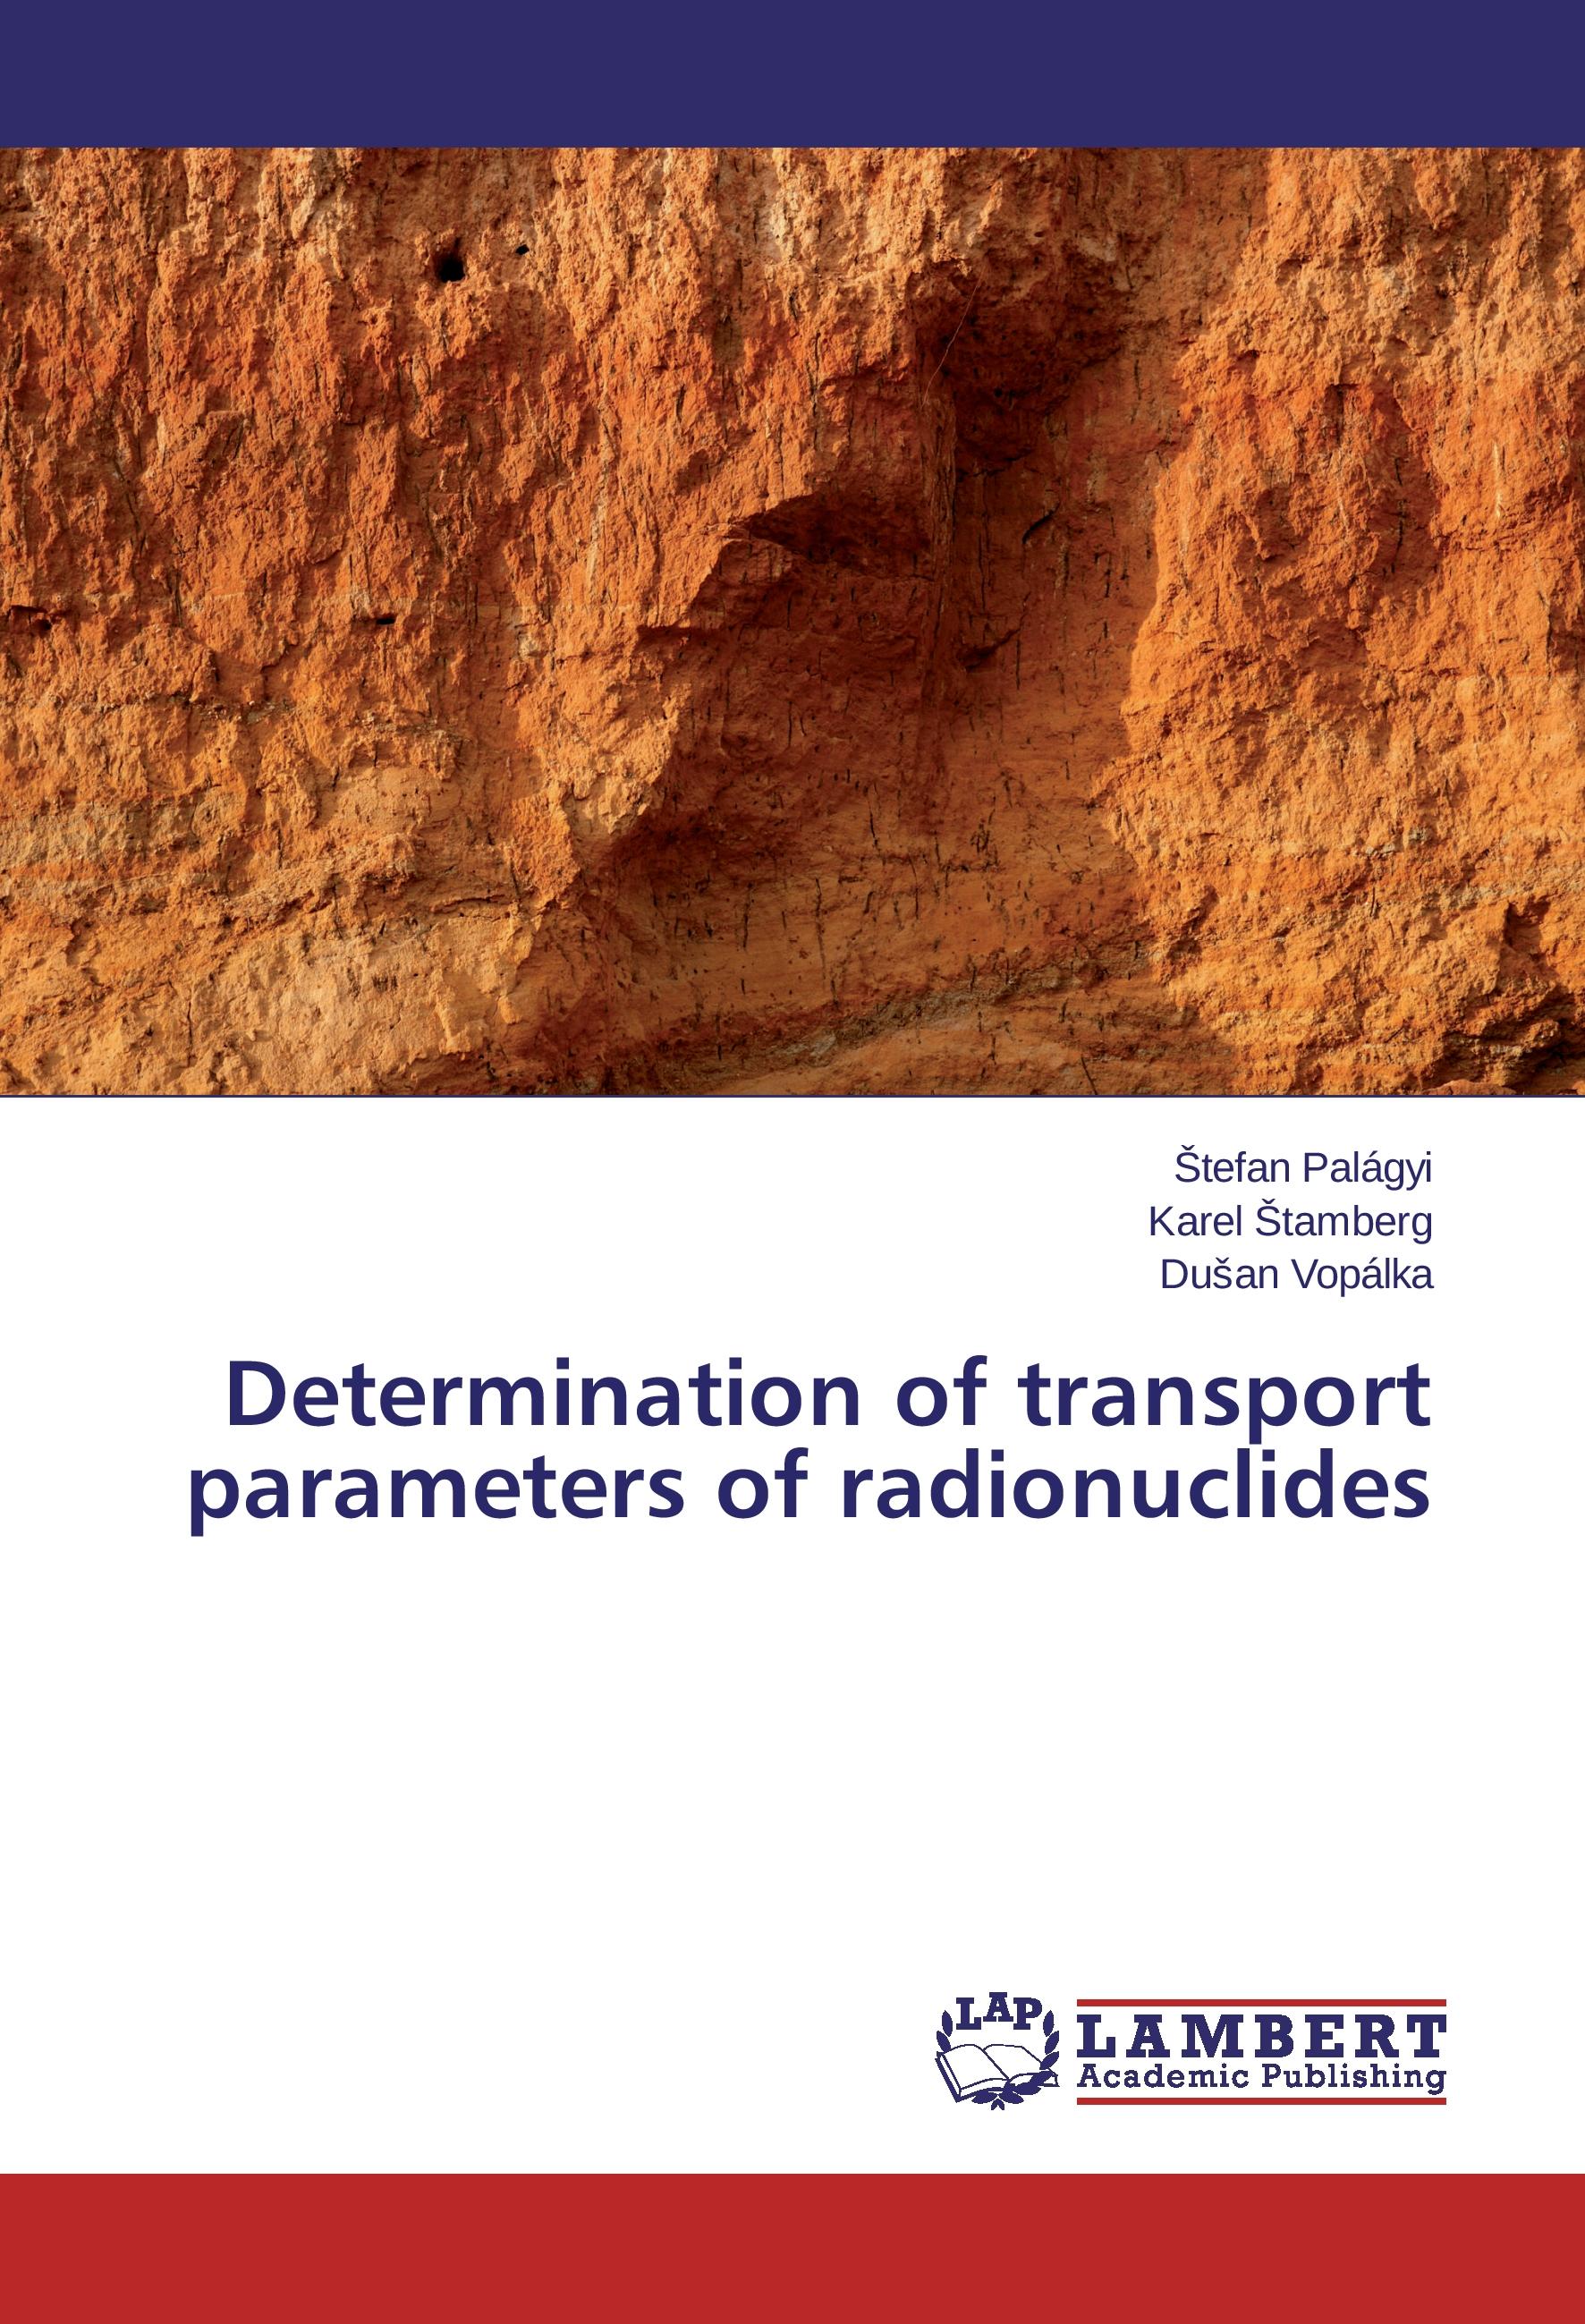 Determination of transport parameters of radionuclides - tefan Palágyi|Karel Štamberg|Dušan Vopálka